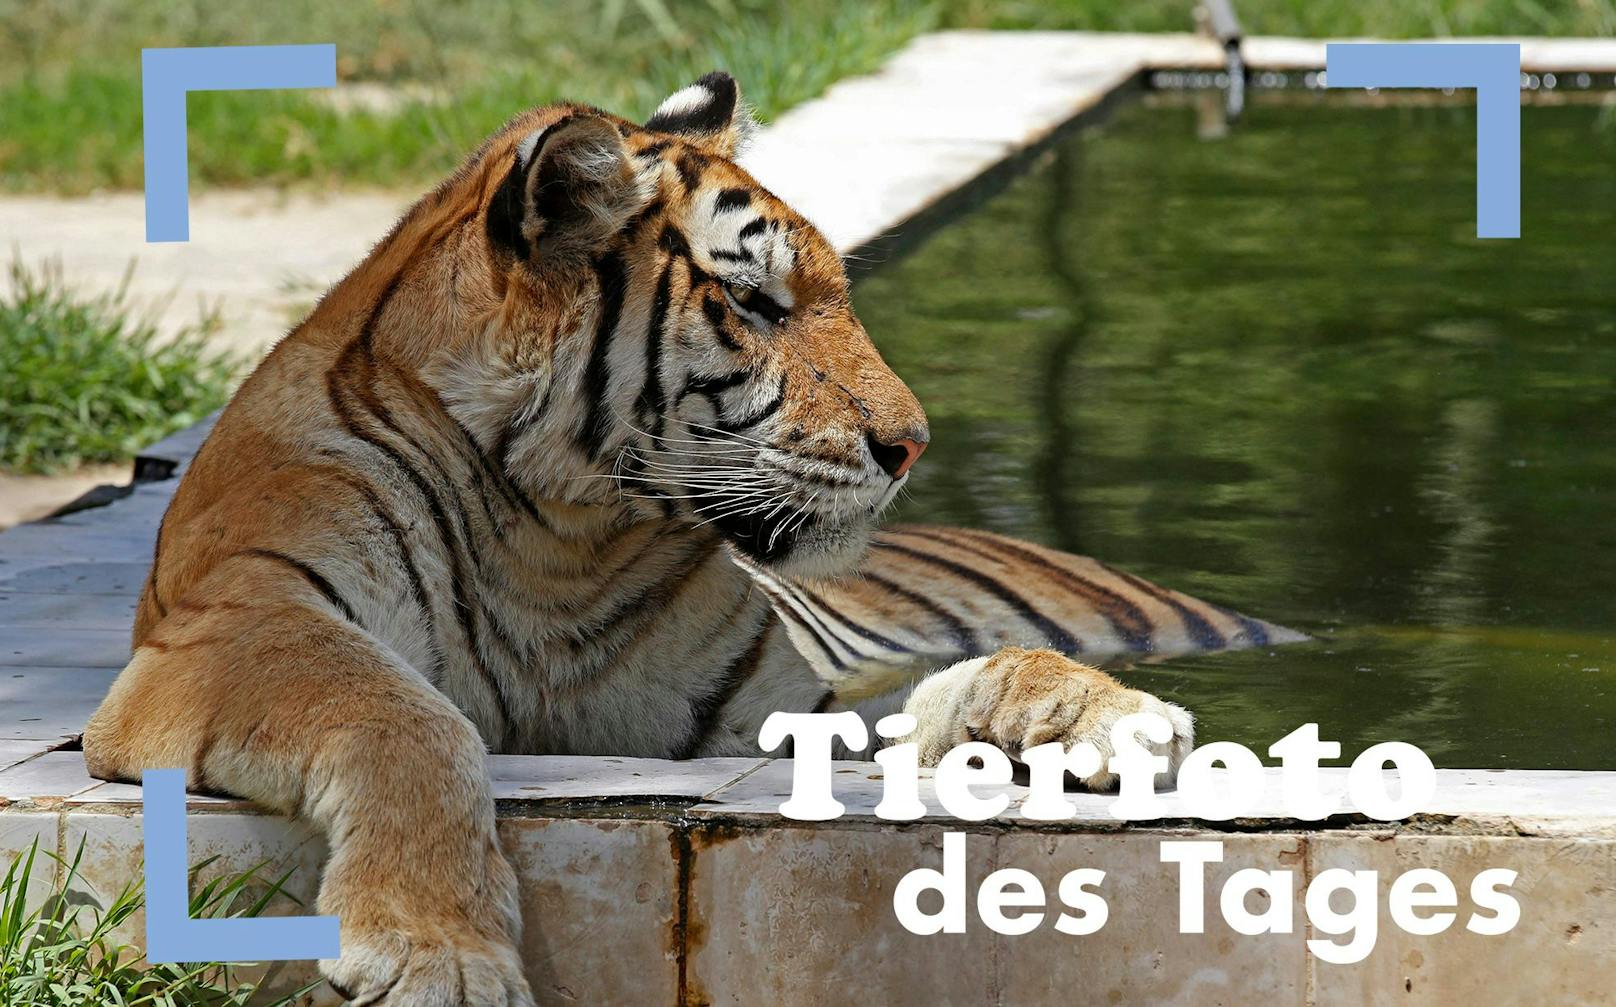 Tja, in einem Zoo in Bagdad hat es momentan 42 Grad Celsius, kein Wunder also, dass dieser Tiger den ganzen Tag lässig in seinem Pool herumdöst.